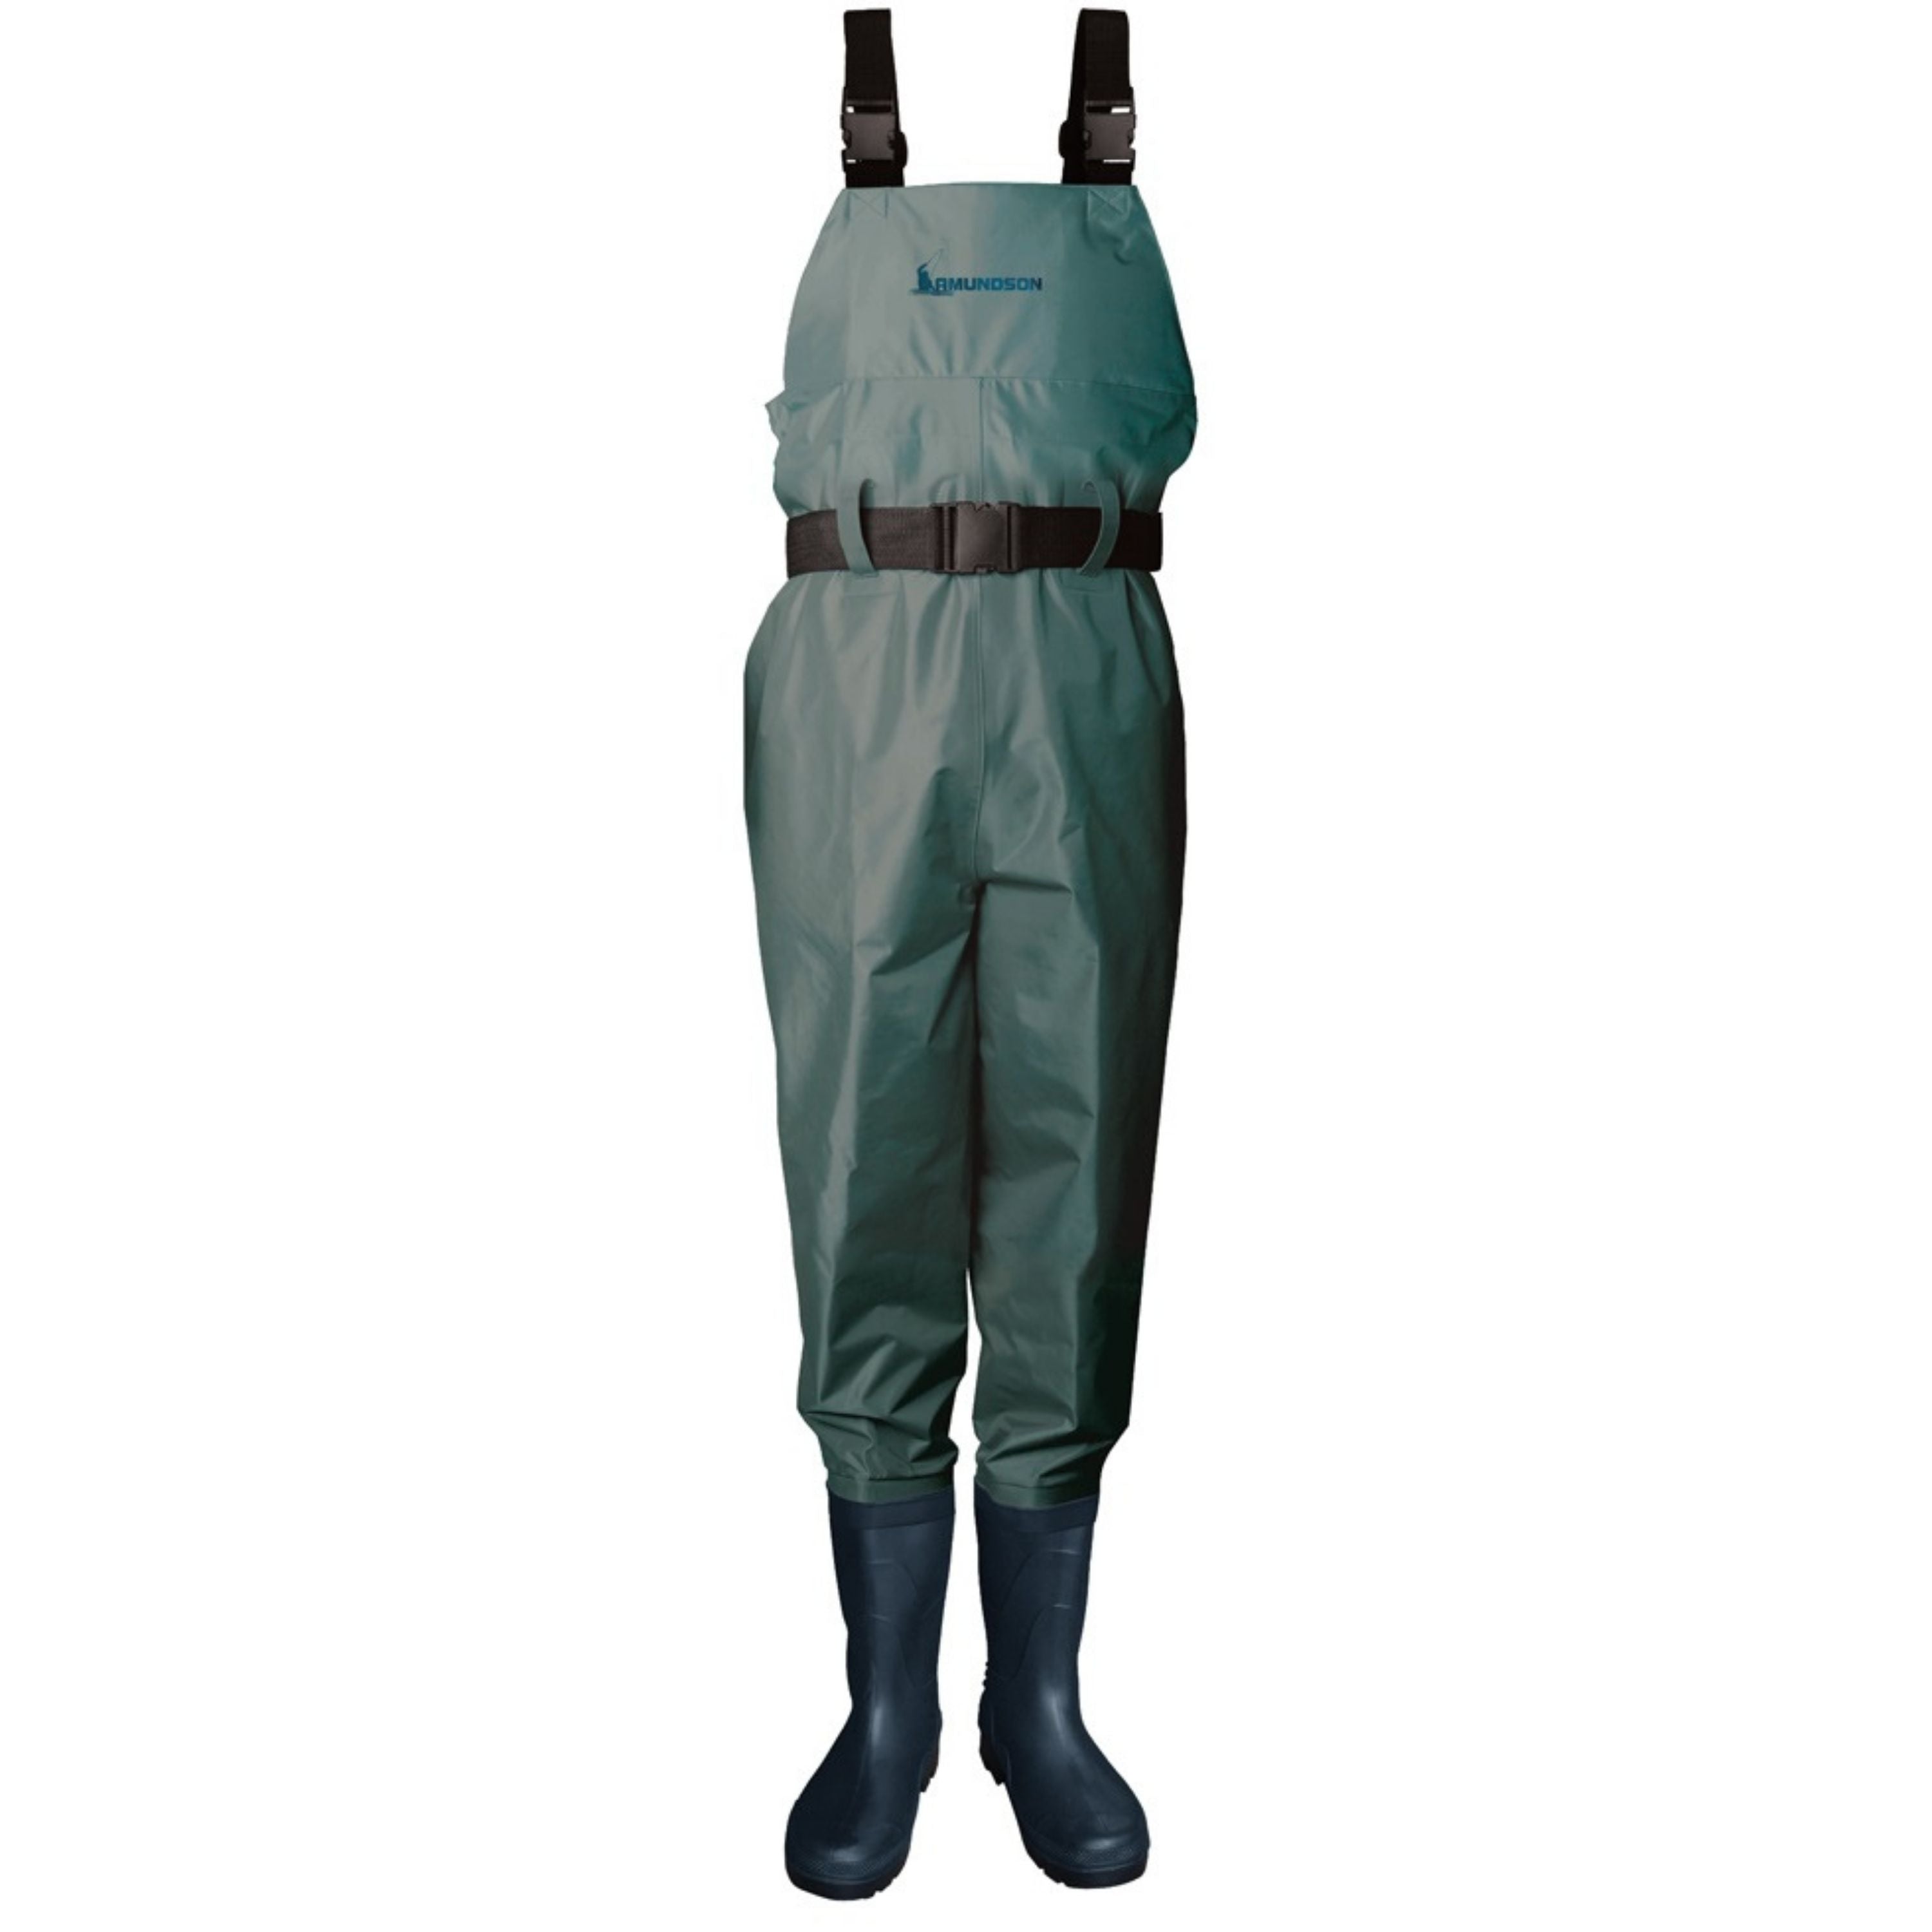 Bottes-pantalon de pêche - 100 PVC